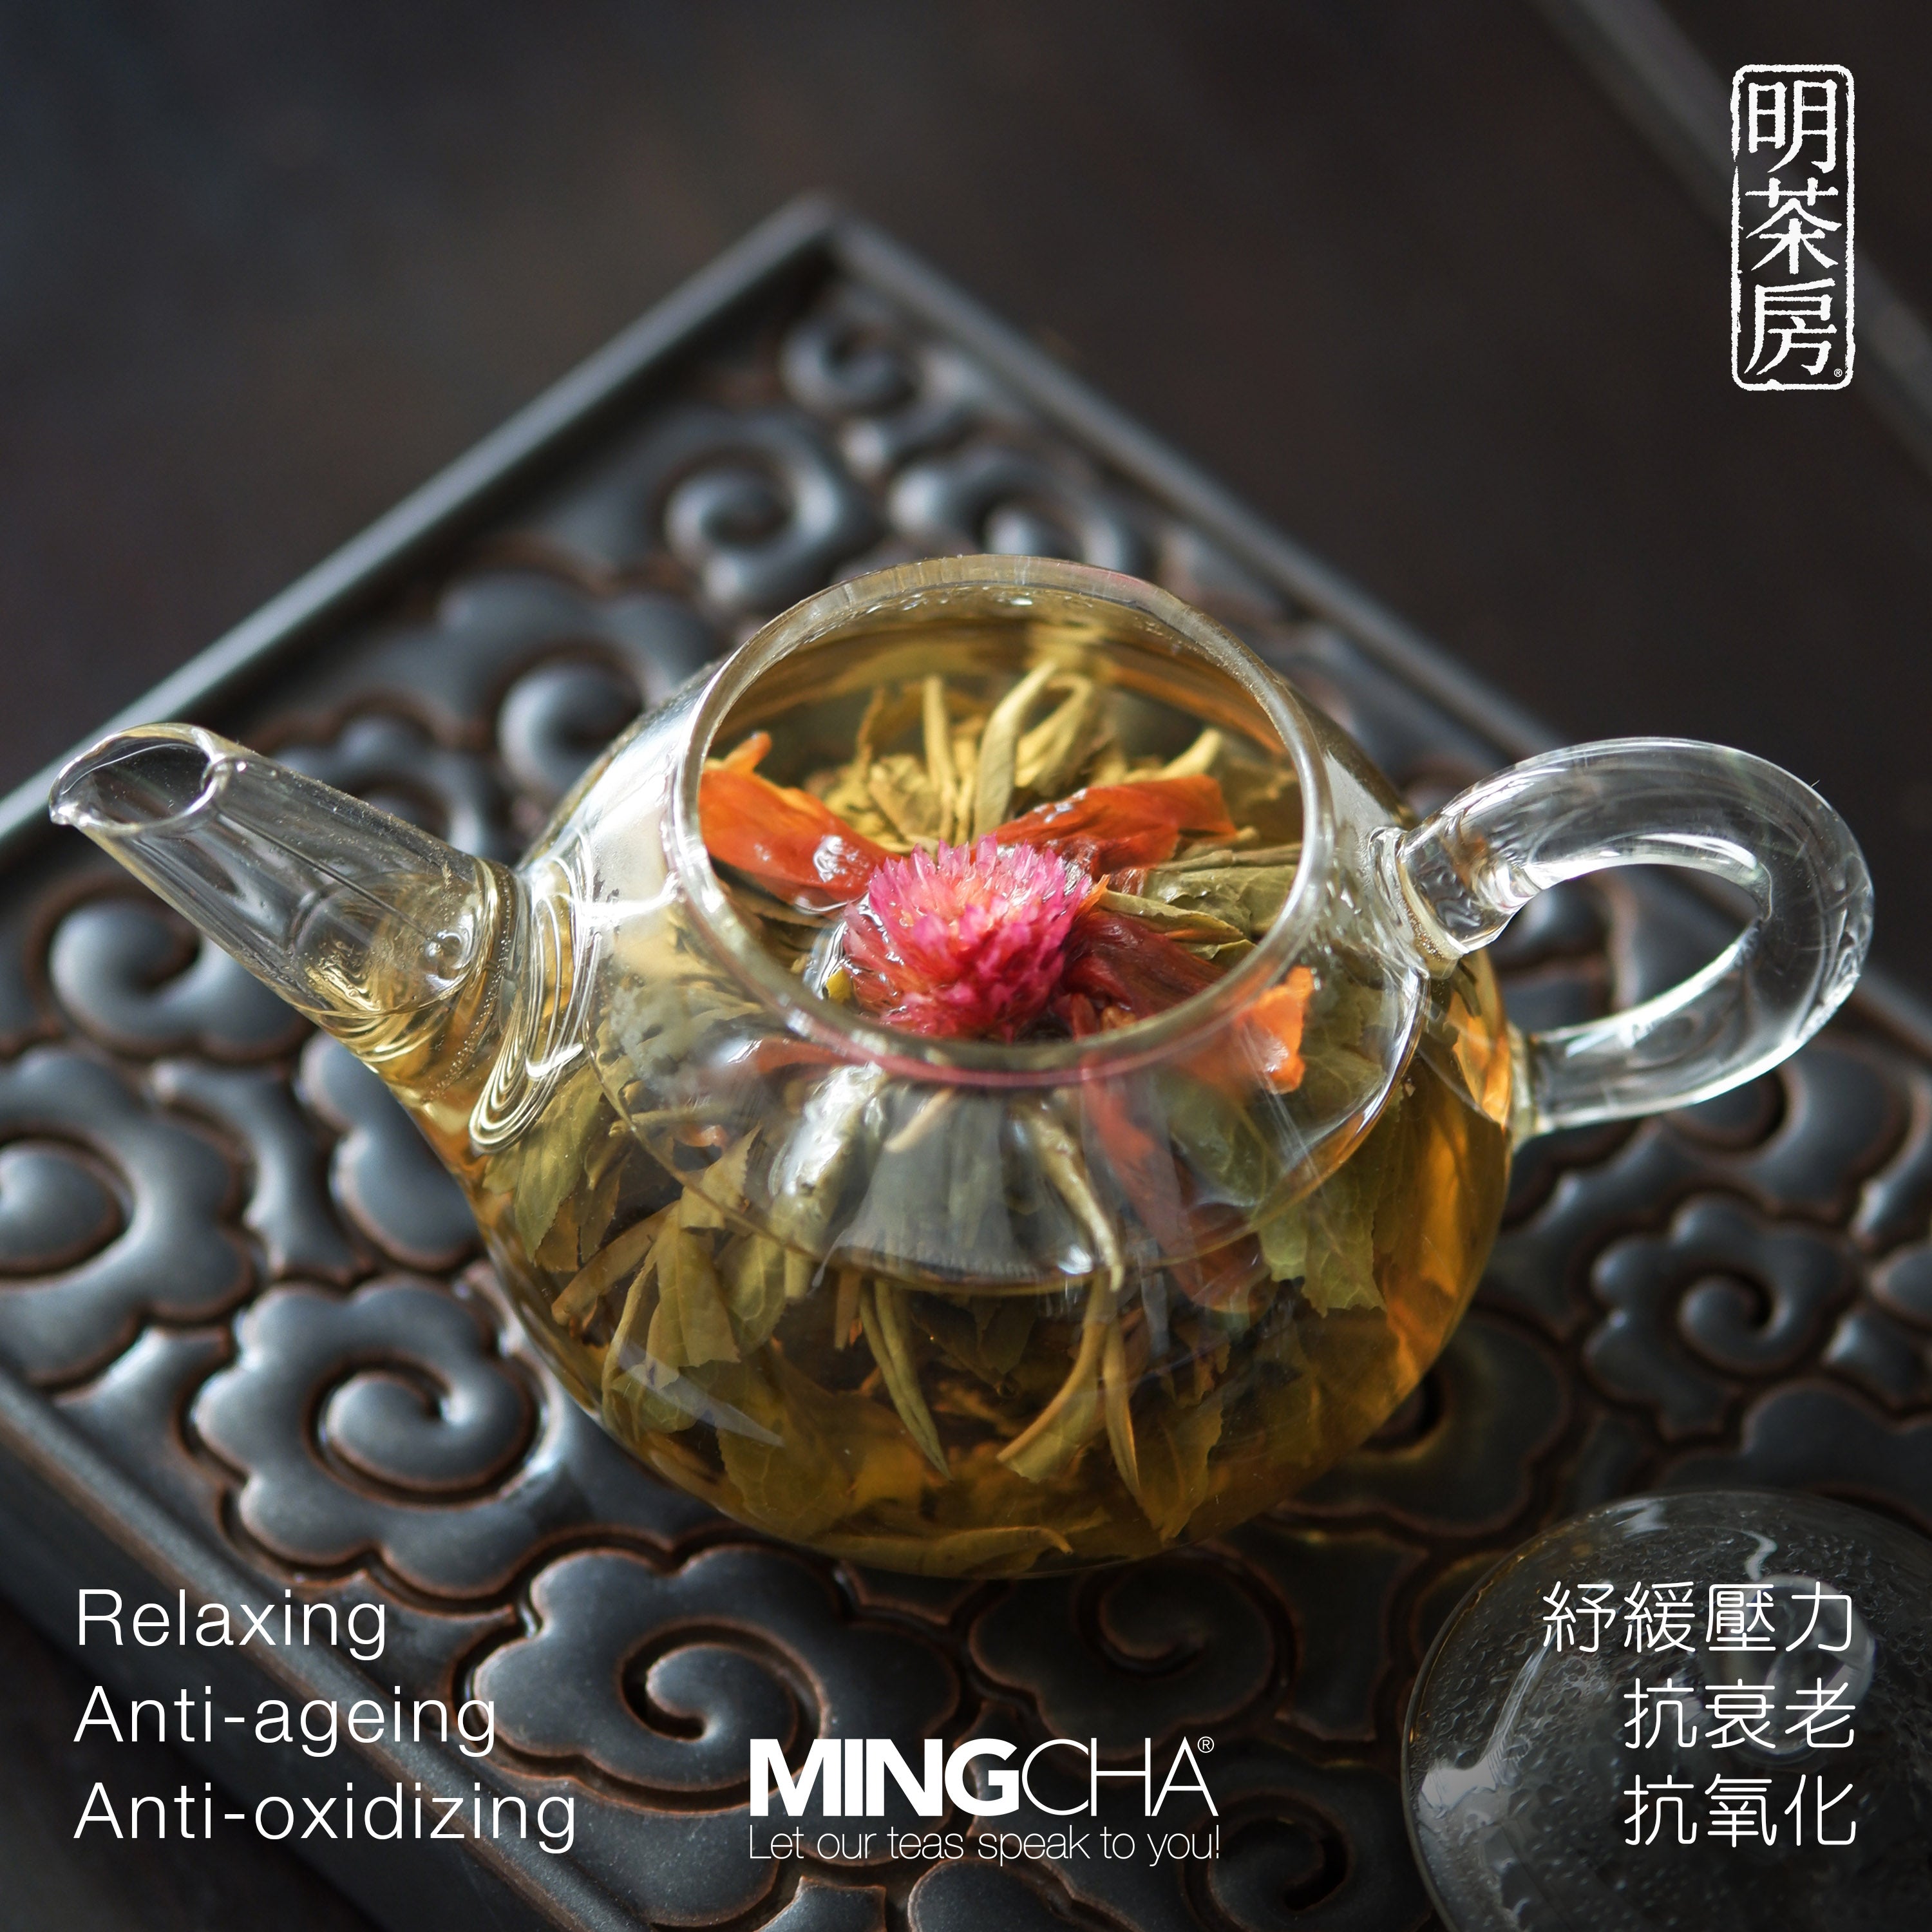 MingCha Jasmine Blossoms Tea Pot Set